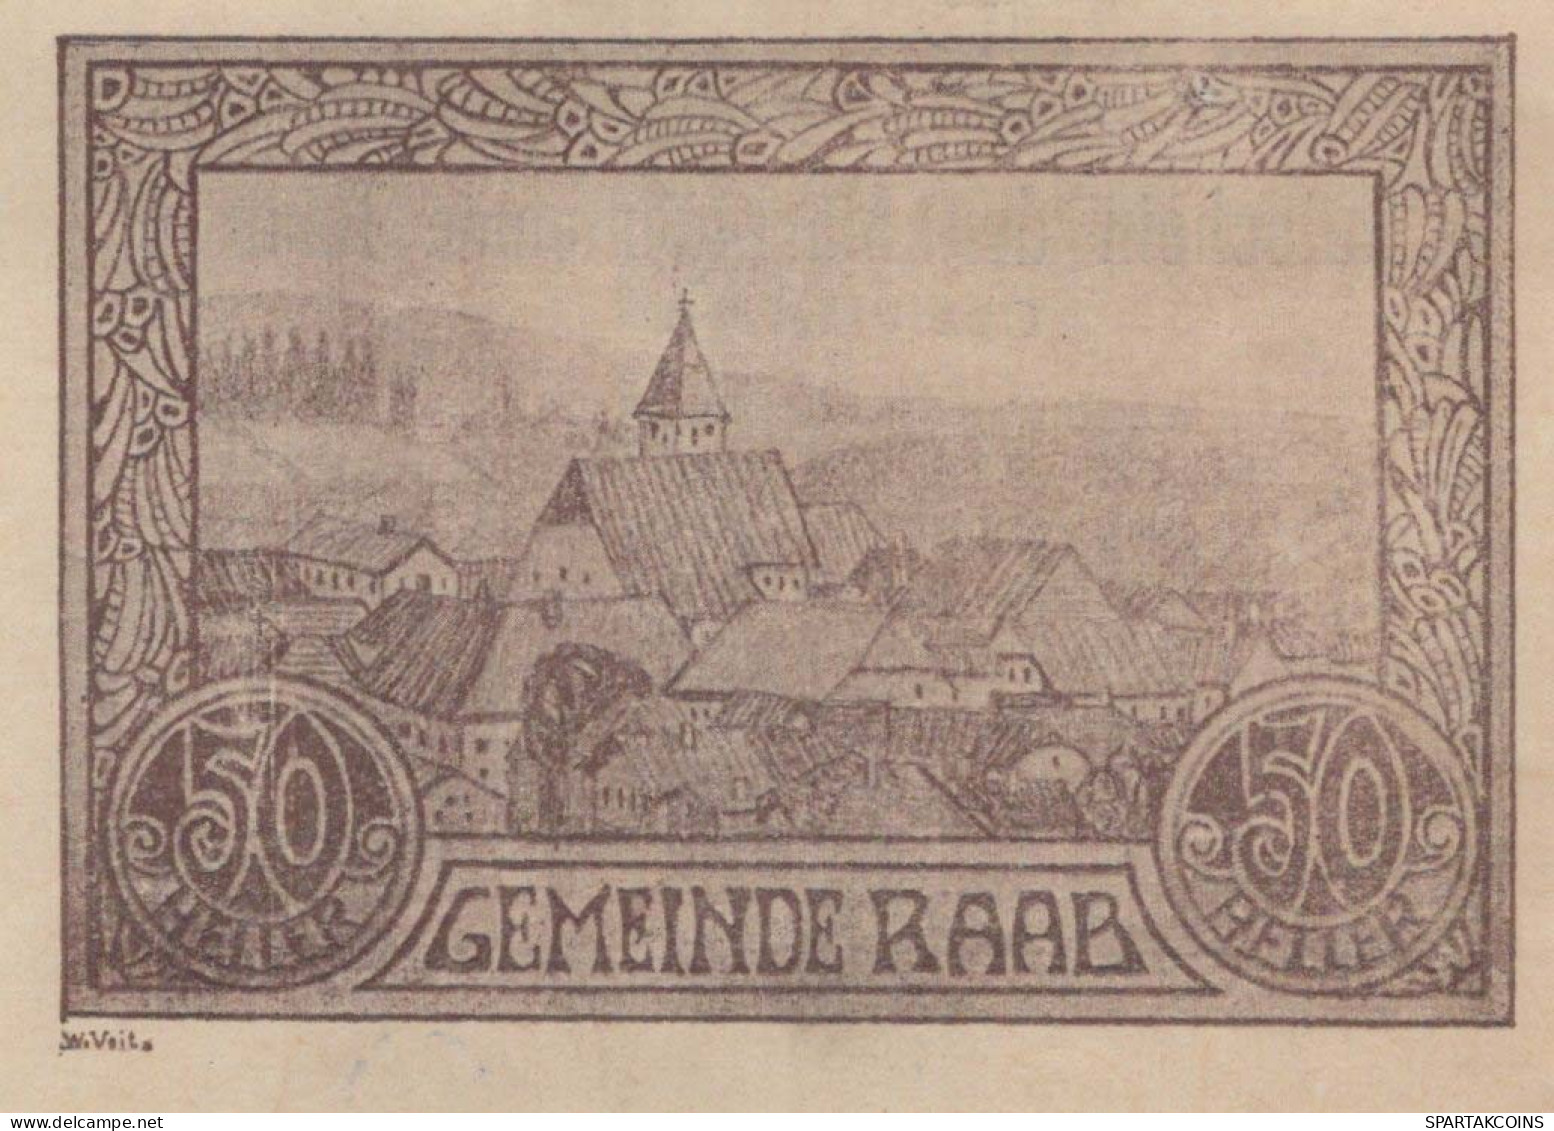 50 HELLER 1920 Stadt RAAB Oberösterreich Österreich Notgeld Banknote #PD962 - Lokale Ausgaben